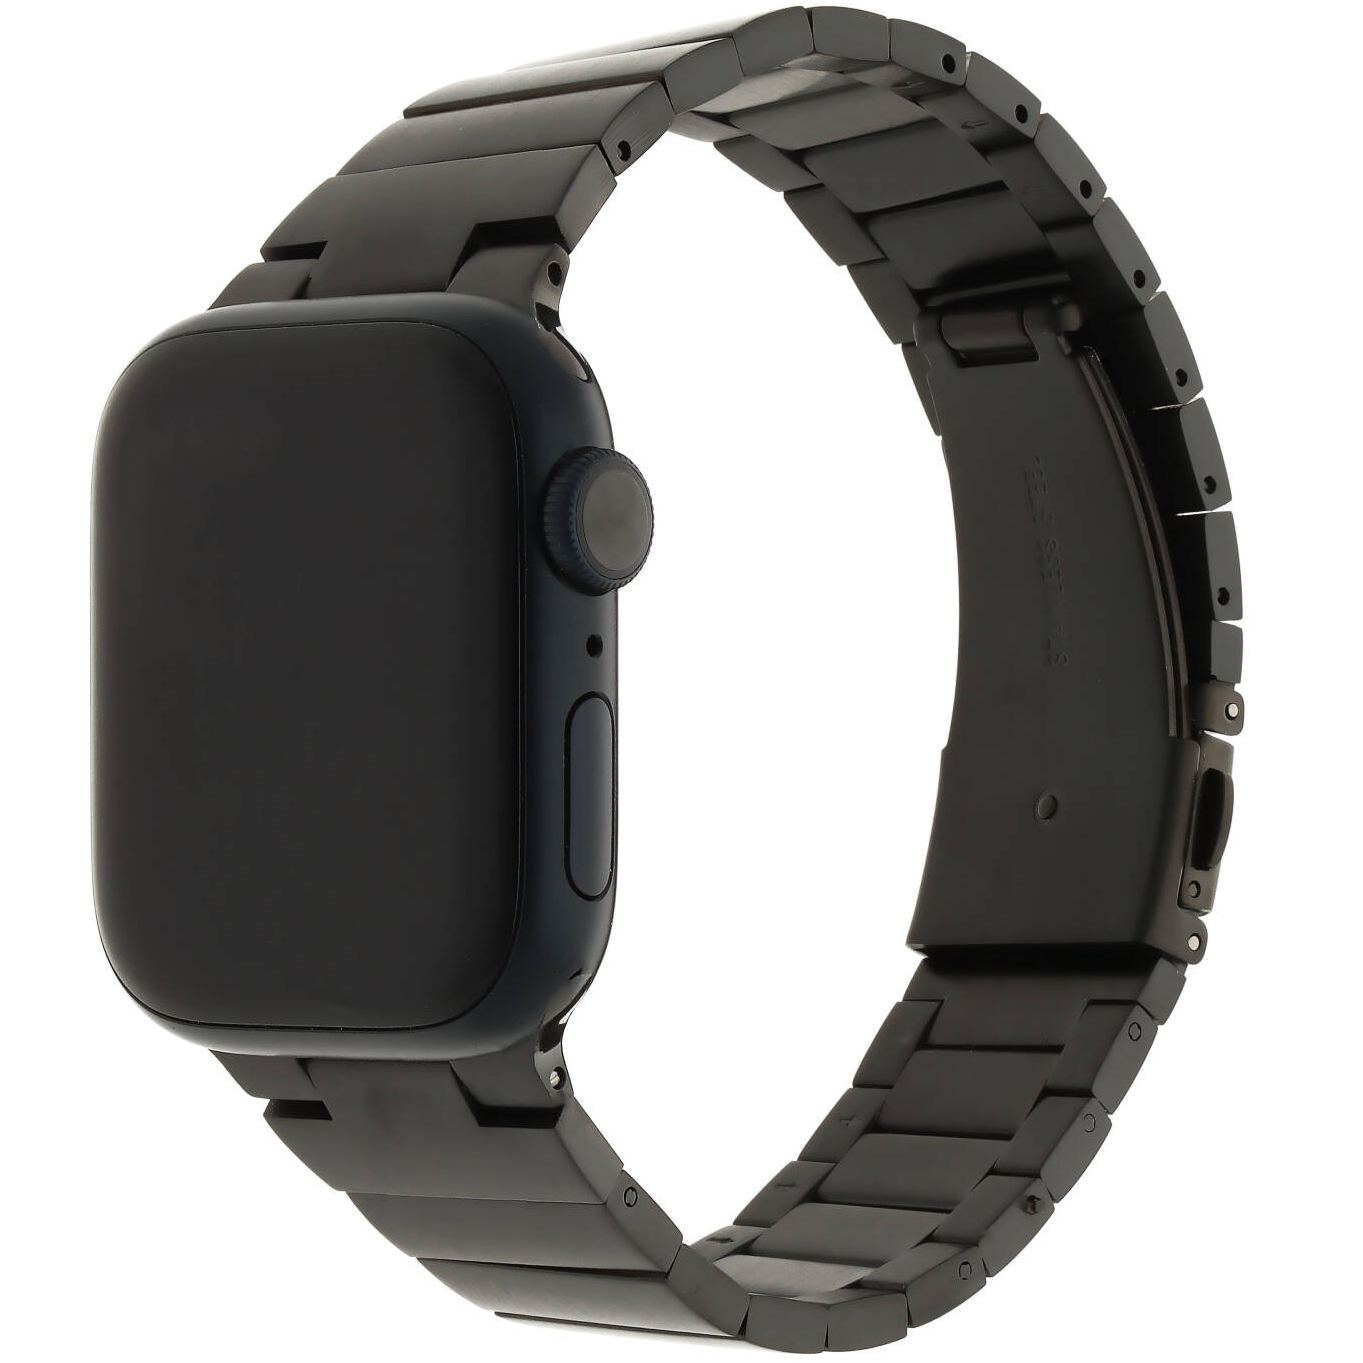  Apple Watch Acél láncszem pánt - fekete